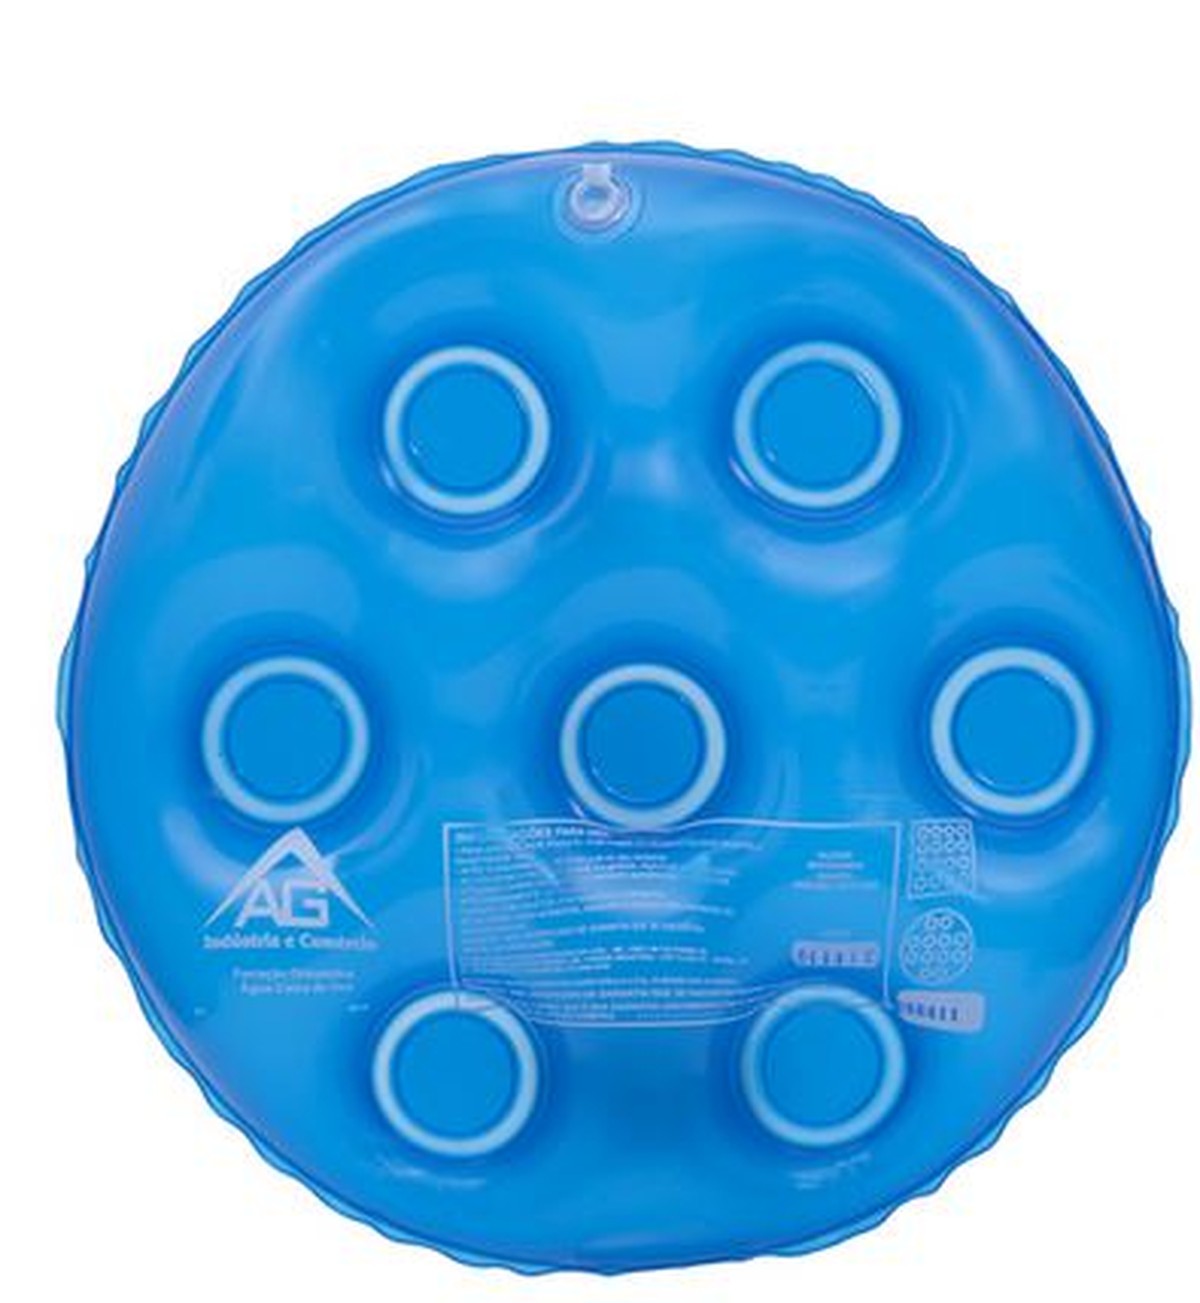 Foto do produto Forração (Almofada) Ortopédica Água Redonda Caixa de Ovo Cód.1119 - AG Plástico